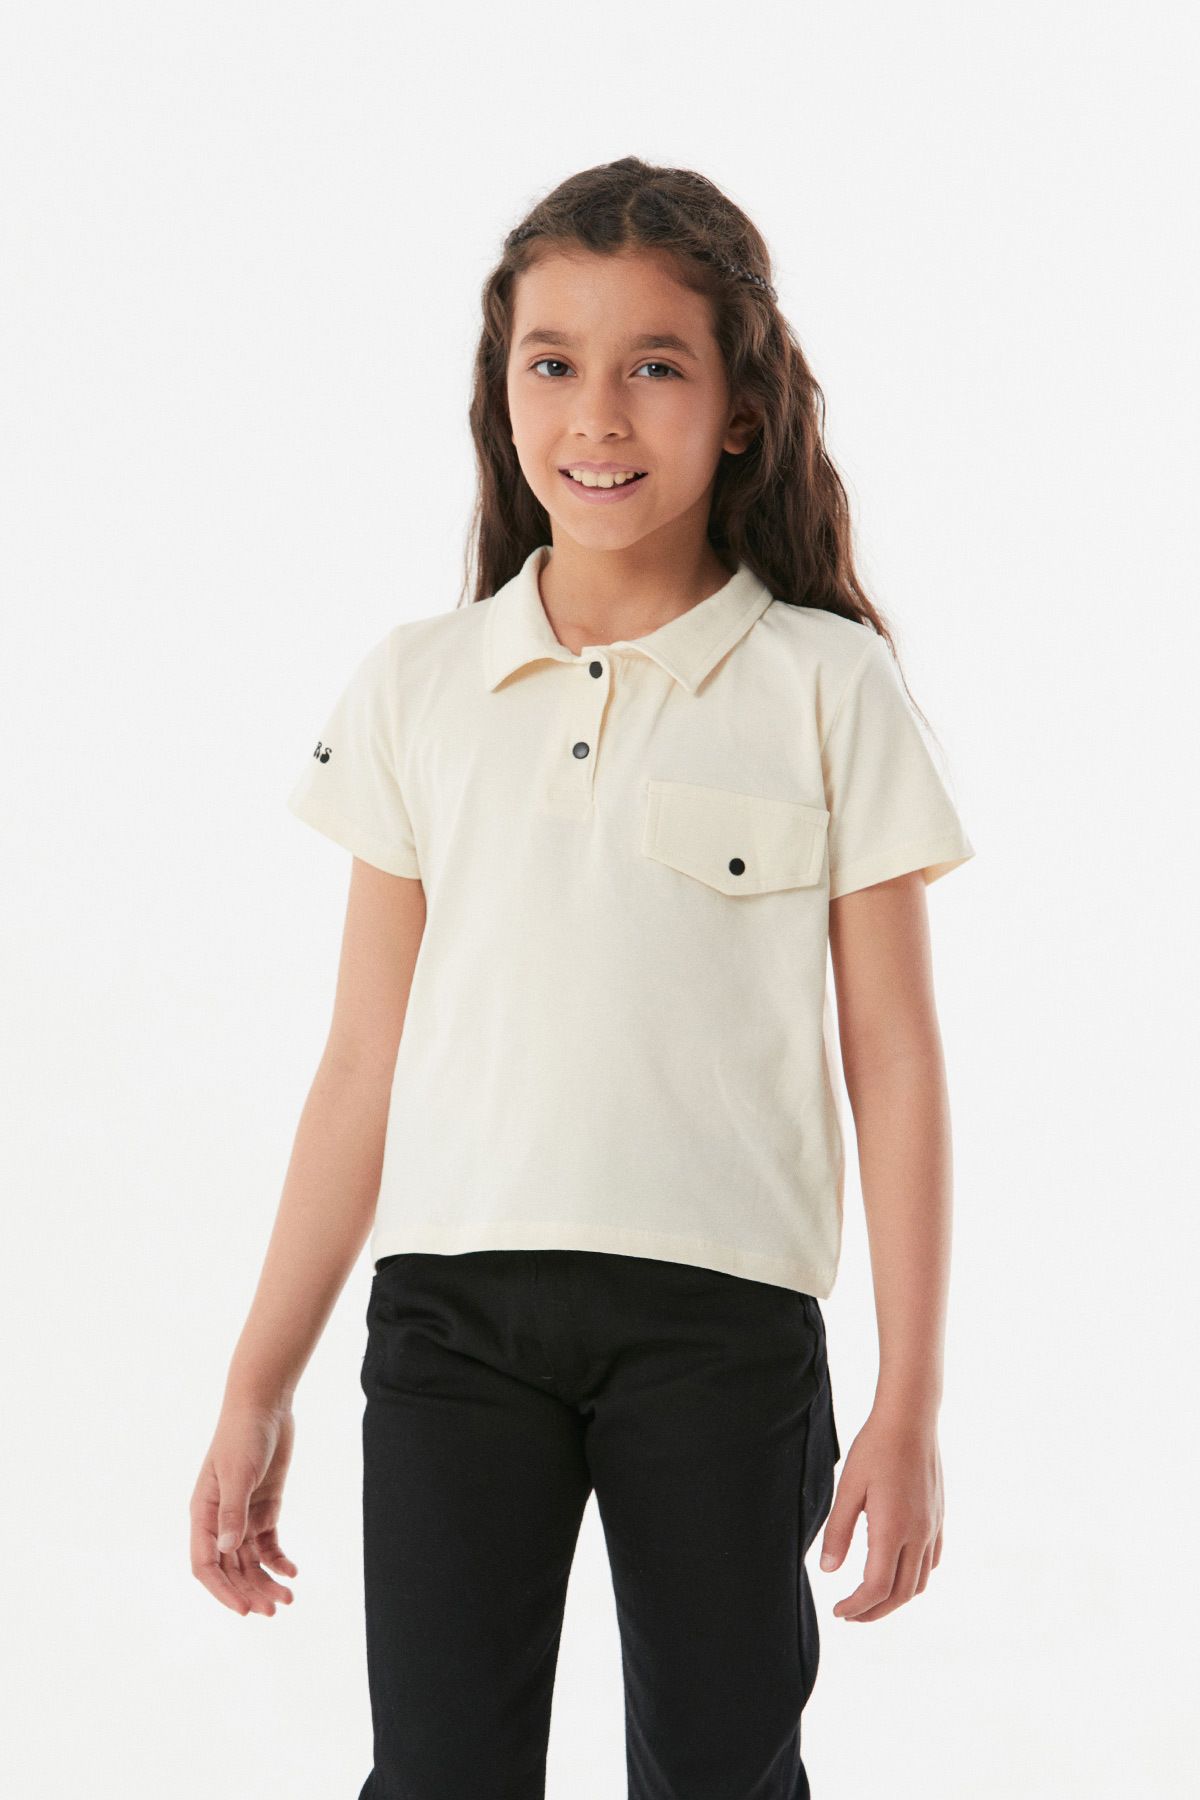 Fullamoda Cep Detaylı Polo Yaka Kız Çocuk Tişört